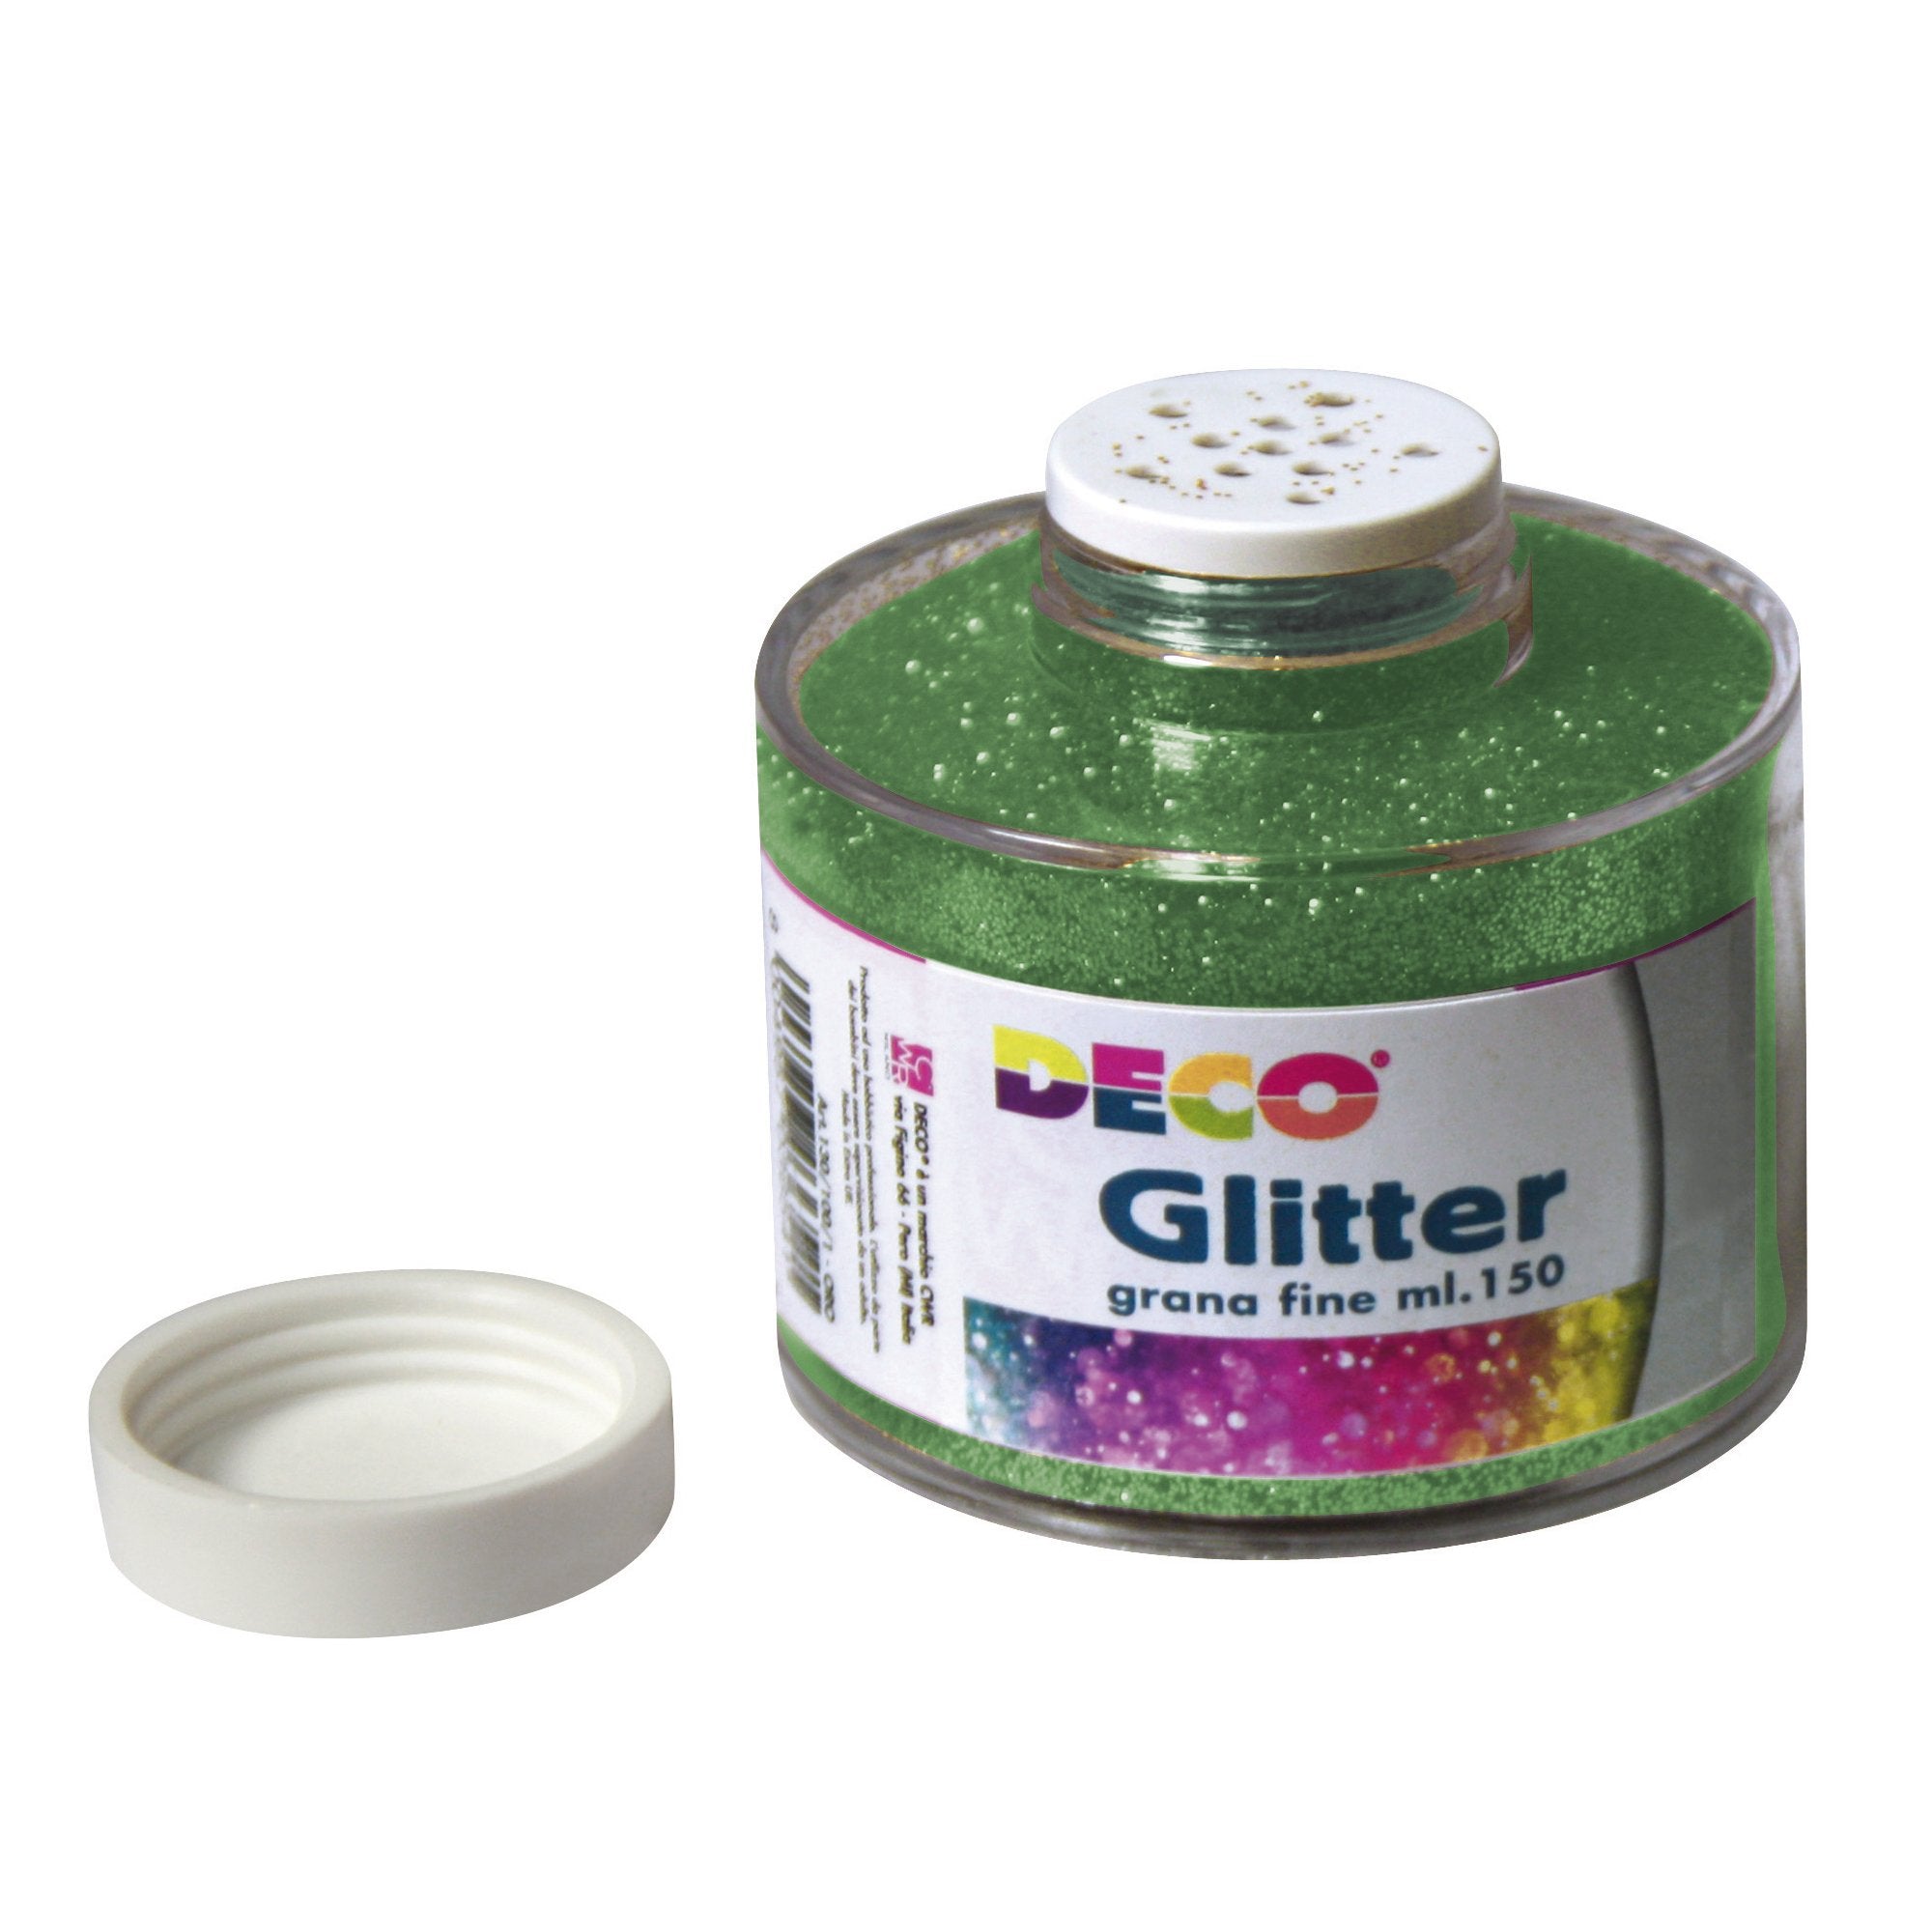 deco-barattolo-glitter-grana-fine-150ml-verde-art-130-100